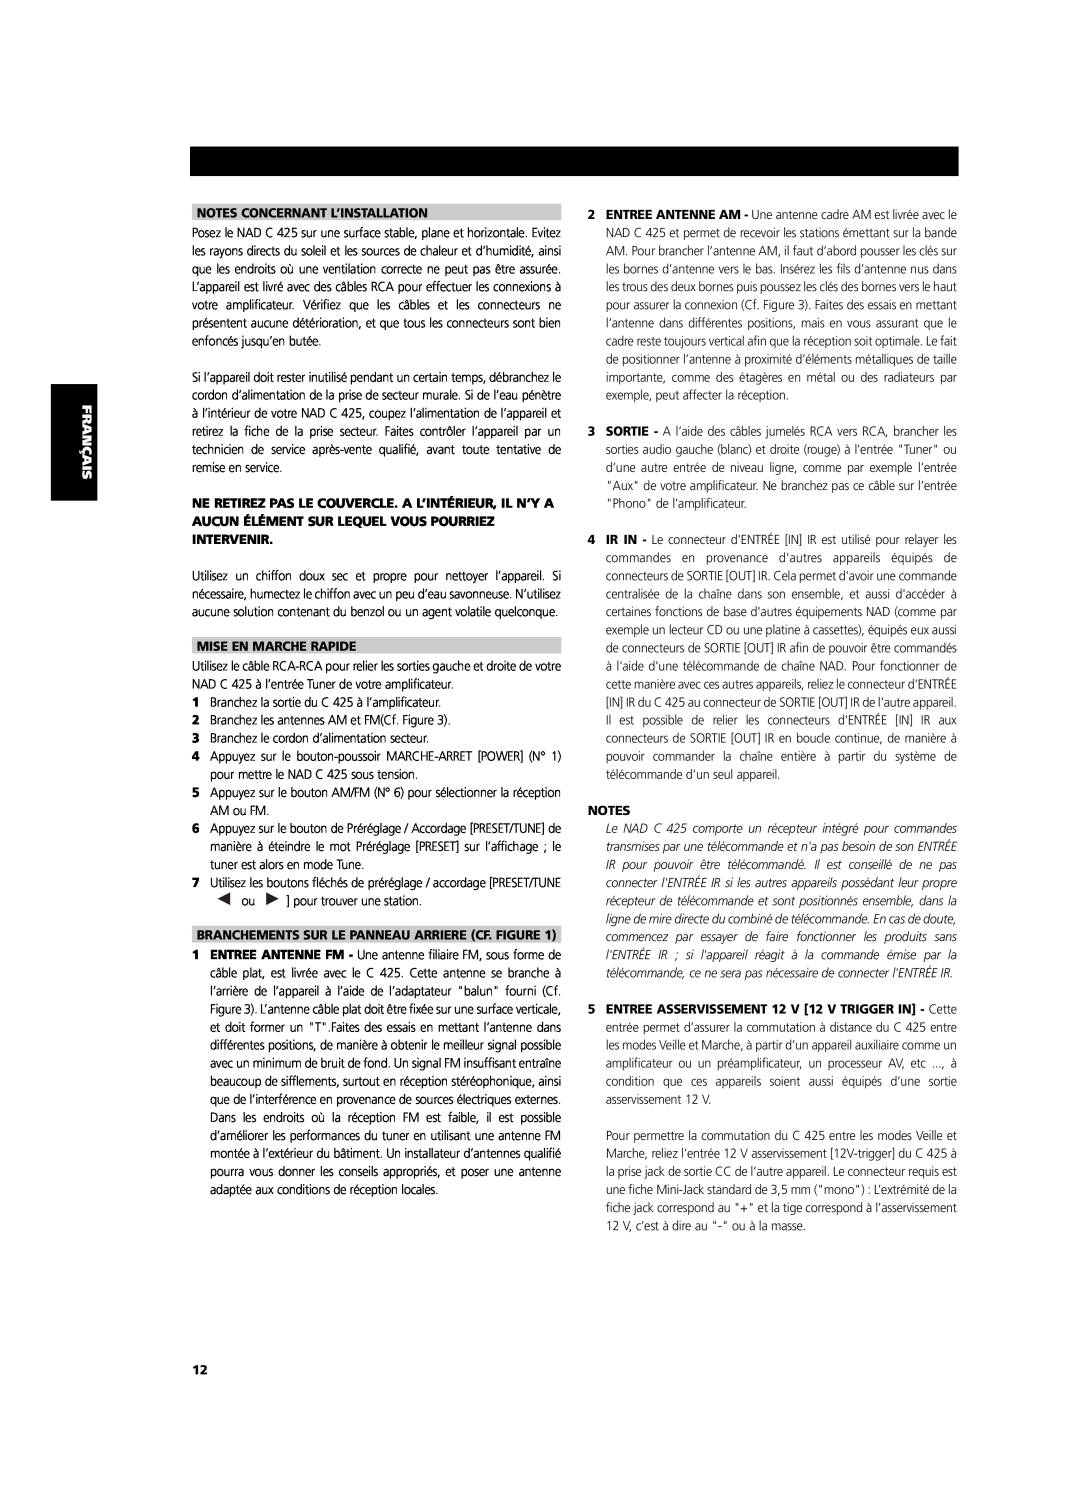 NAD C 425 Svenska, Notes Concernant L’Installation, Mise En Marche Rapide, Branchements Sur Le Panneau Arriere Cf. Figure 